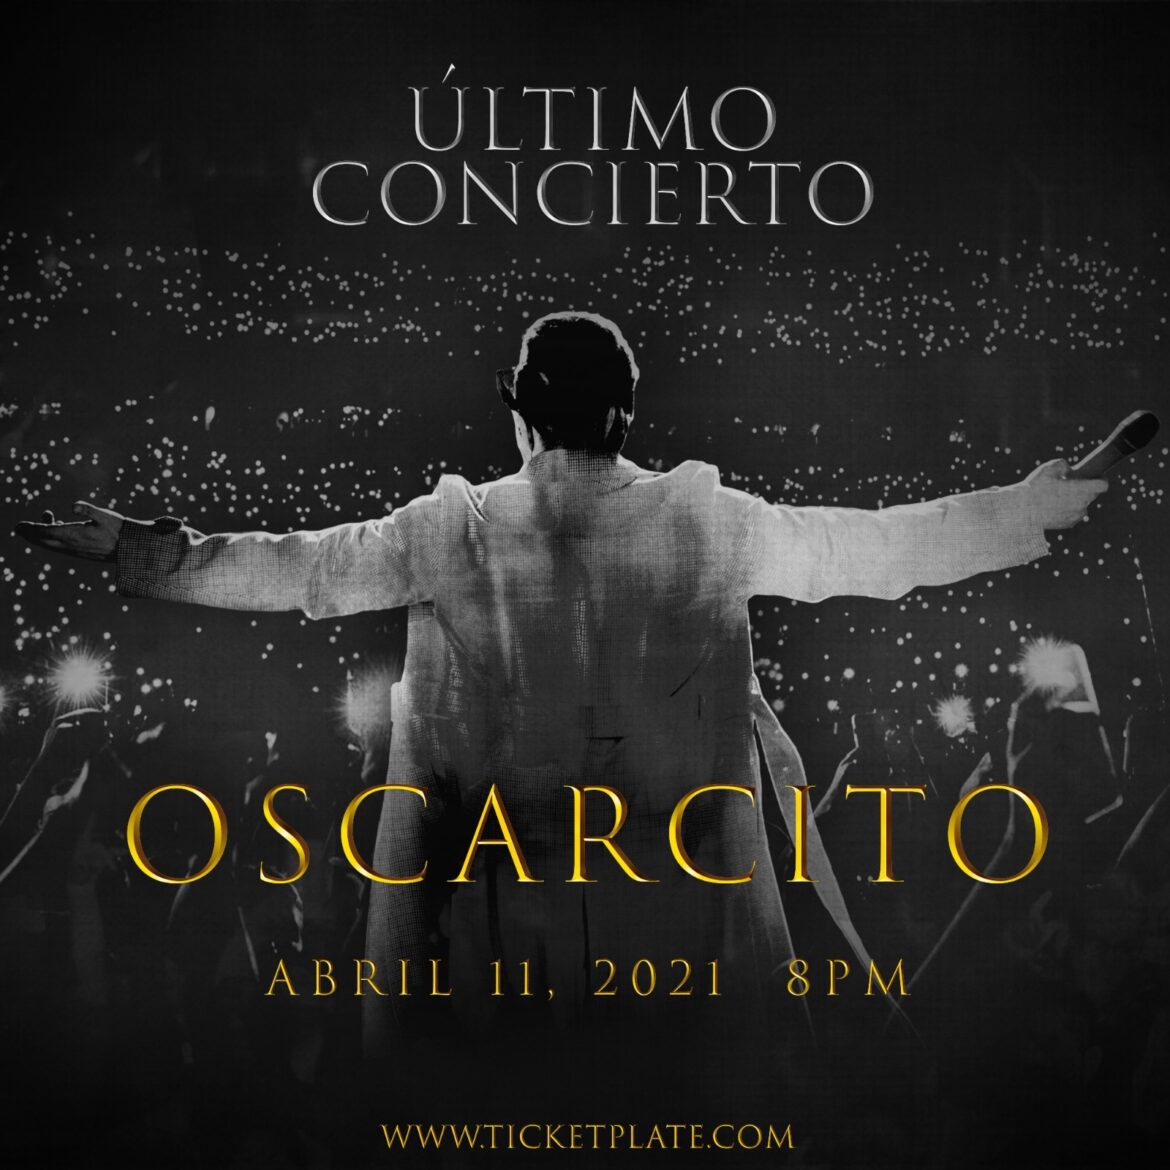 El cantante Oscarcito se despide de los escenarios con concierto virtual y rifa de automóvil de South Dade Toyota